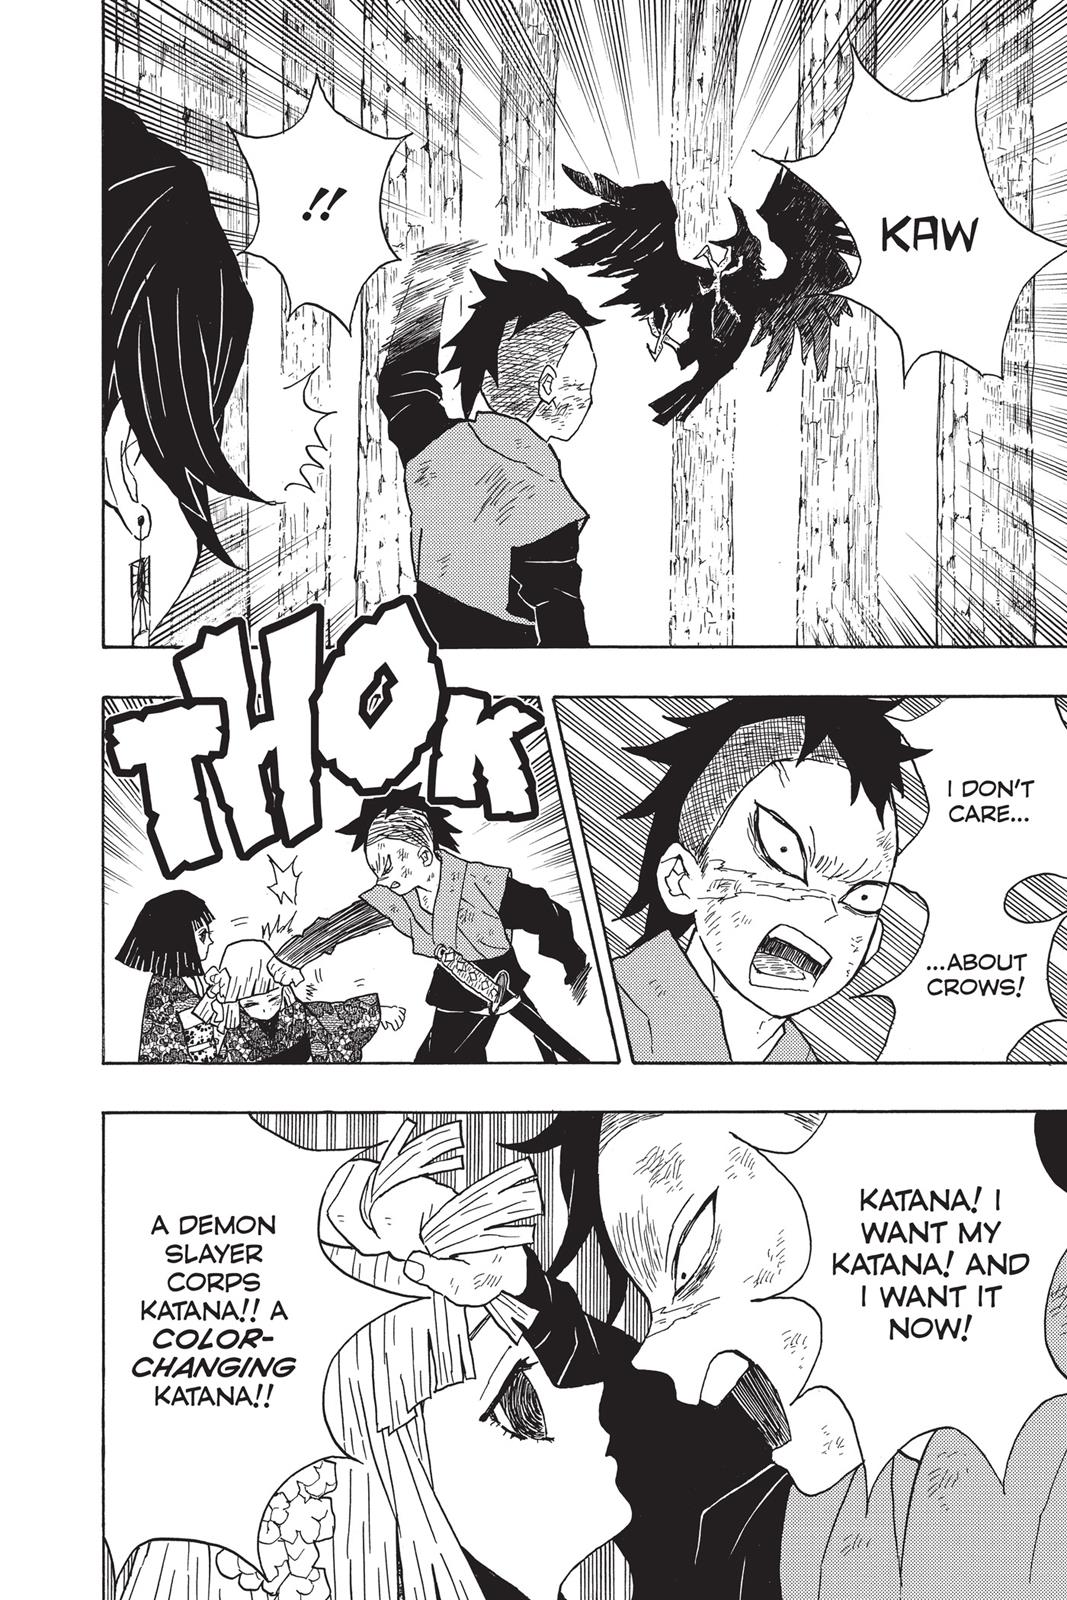 Demon Slayer Manga Manga Chapter - 8 - image 15